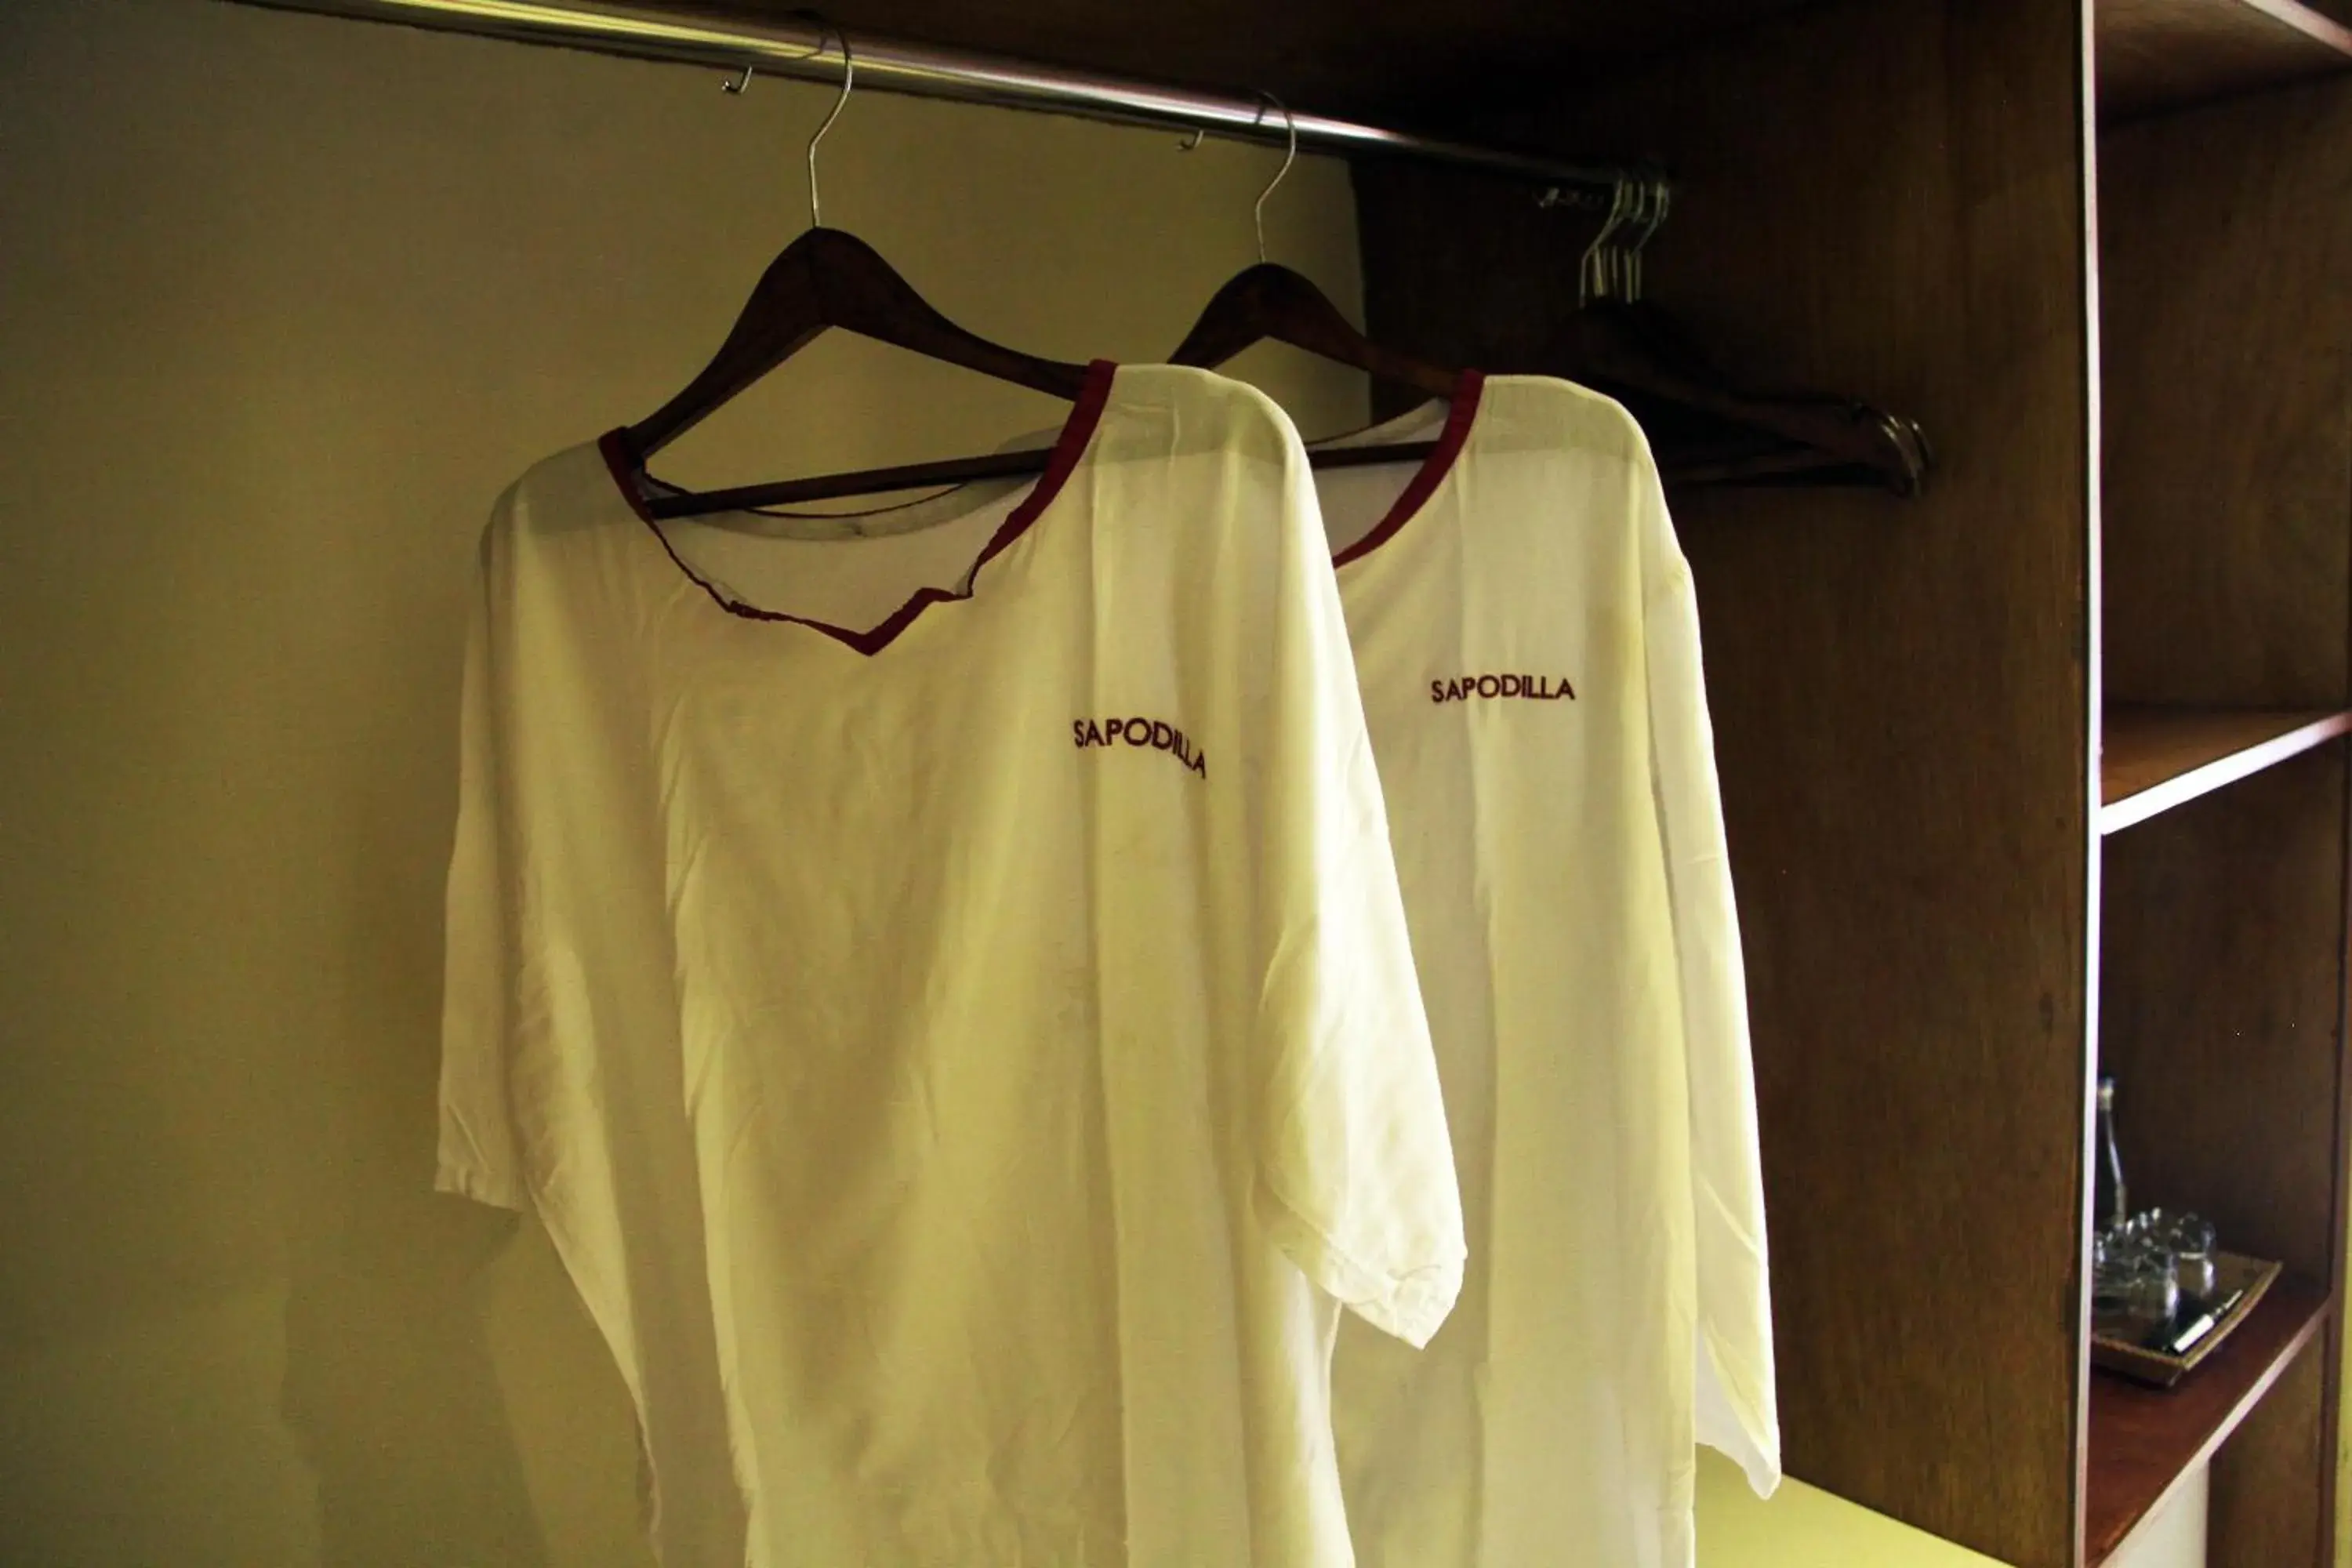 wardrobe in Sapodilla Ubud